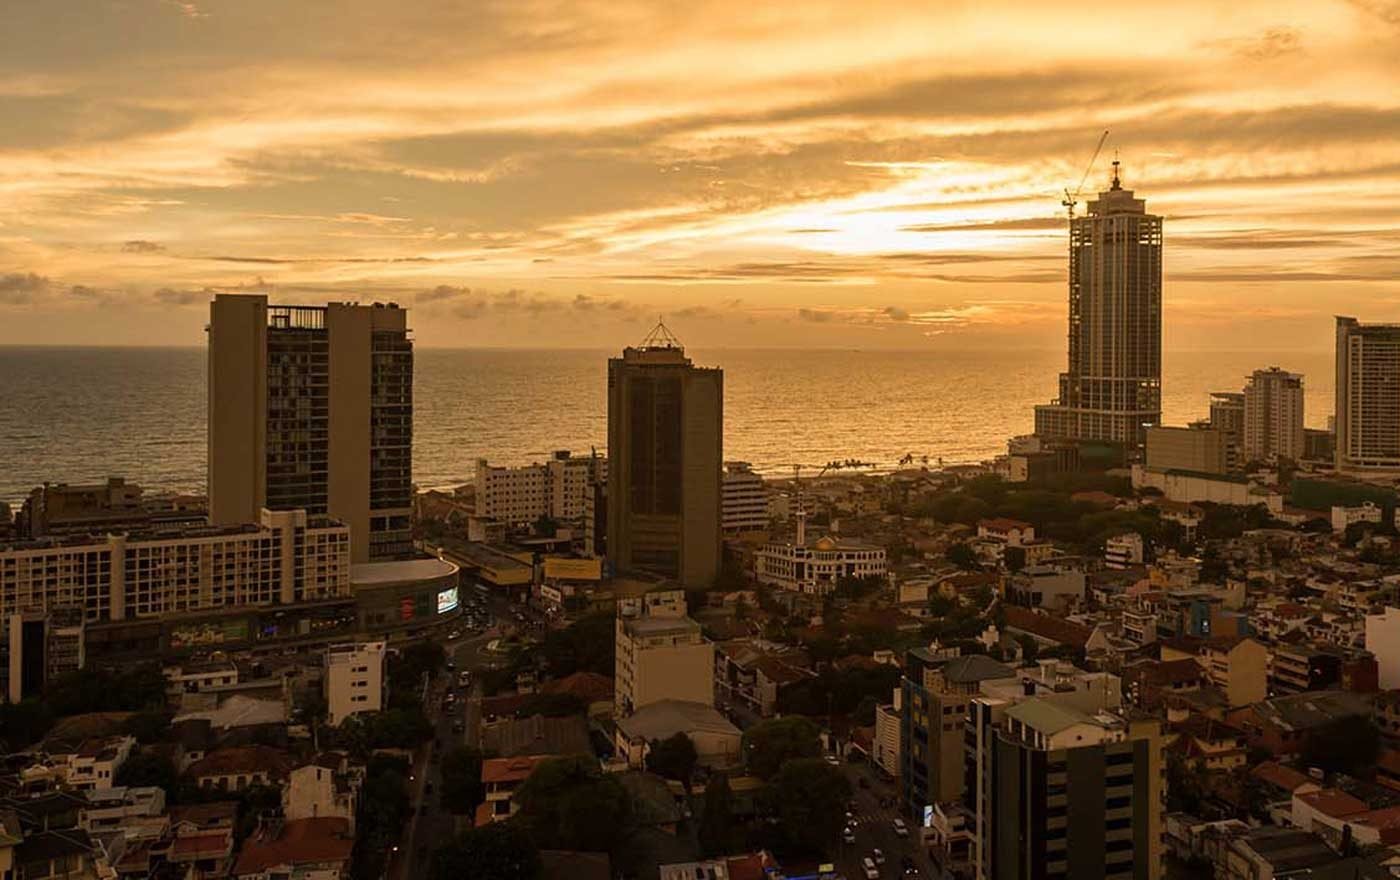 Die Hauptstadt Sri Lankas, Colombo. Auf der Insel detonierten am Ostersonntag zahlreiche Bomben und forderten hunderte Todesopfer und Verletzte. Foto: Wikimedia/dronepicr